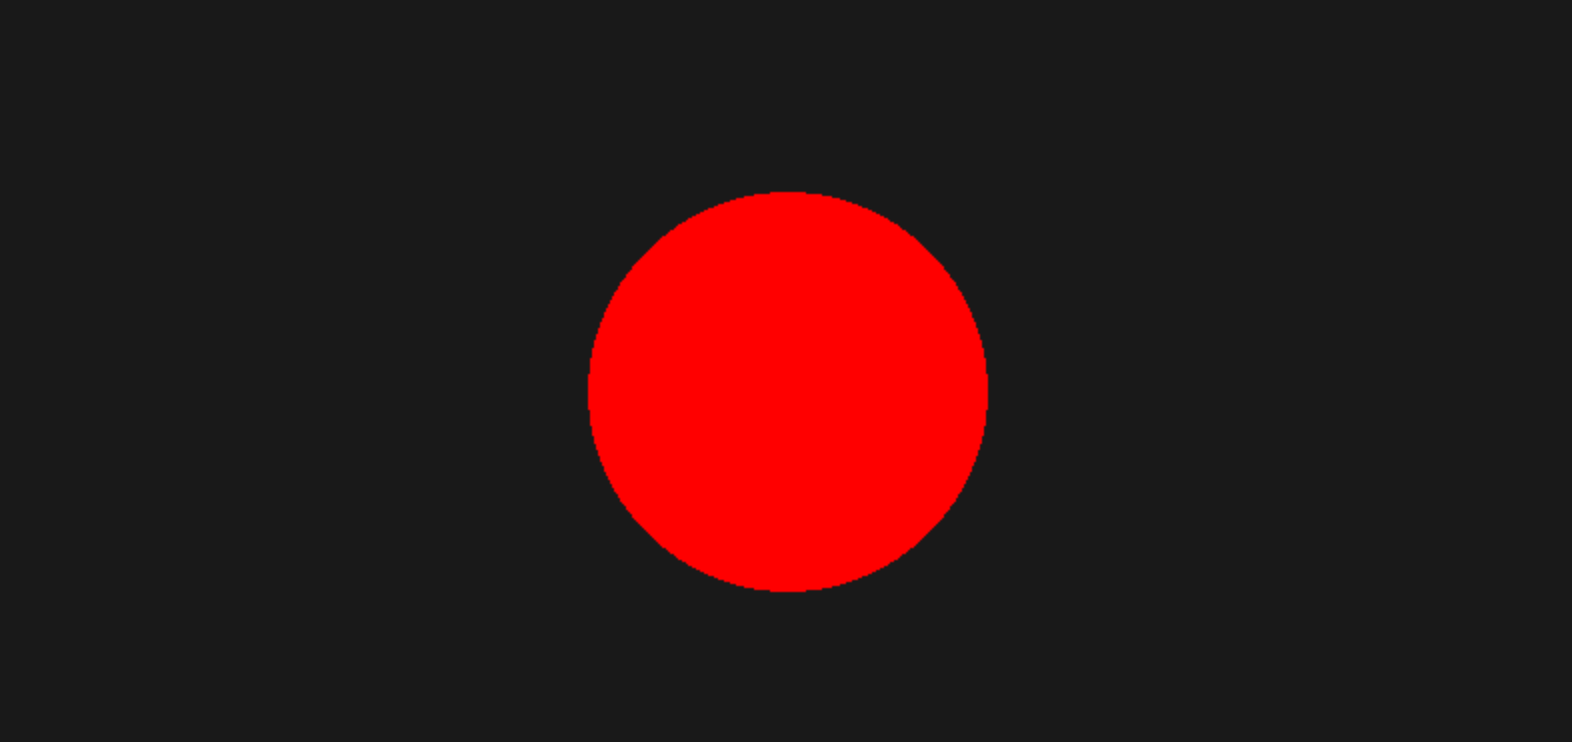 Ein Kreis wird durch die draw.circle-Funktion dargestellt